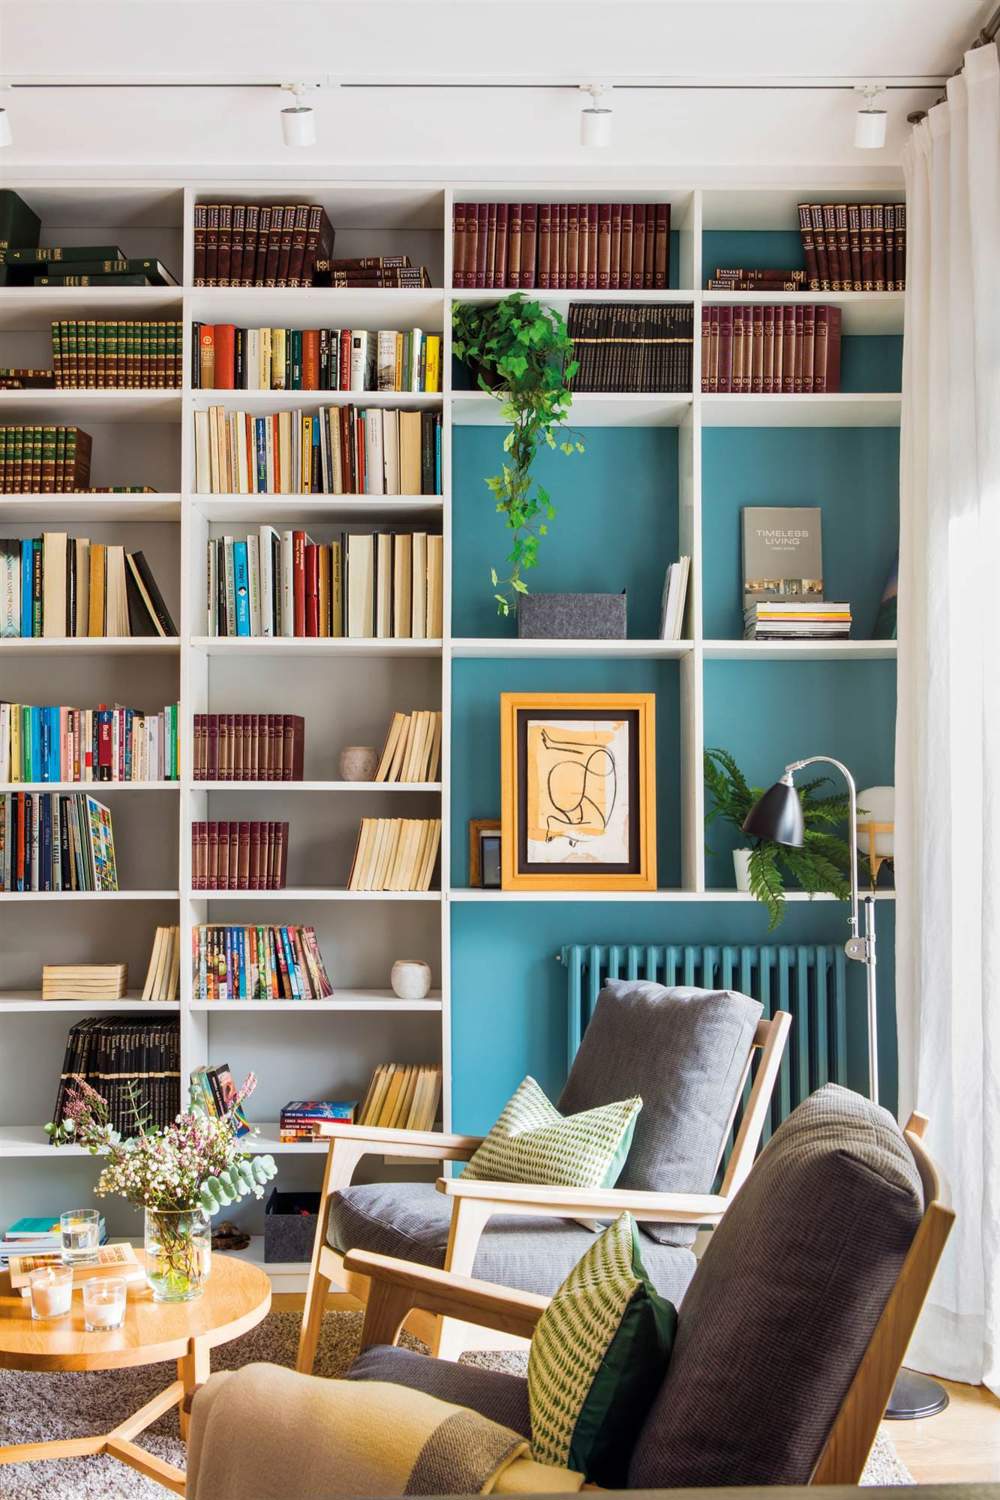 pared con libreria pintada de blanco y azul con radiador 00474695 1fb91e8e